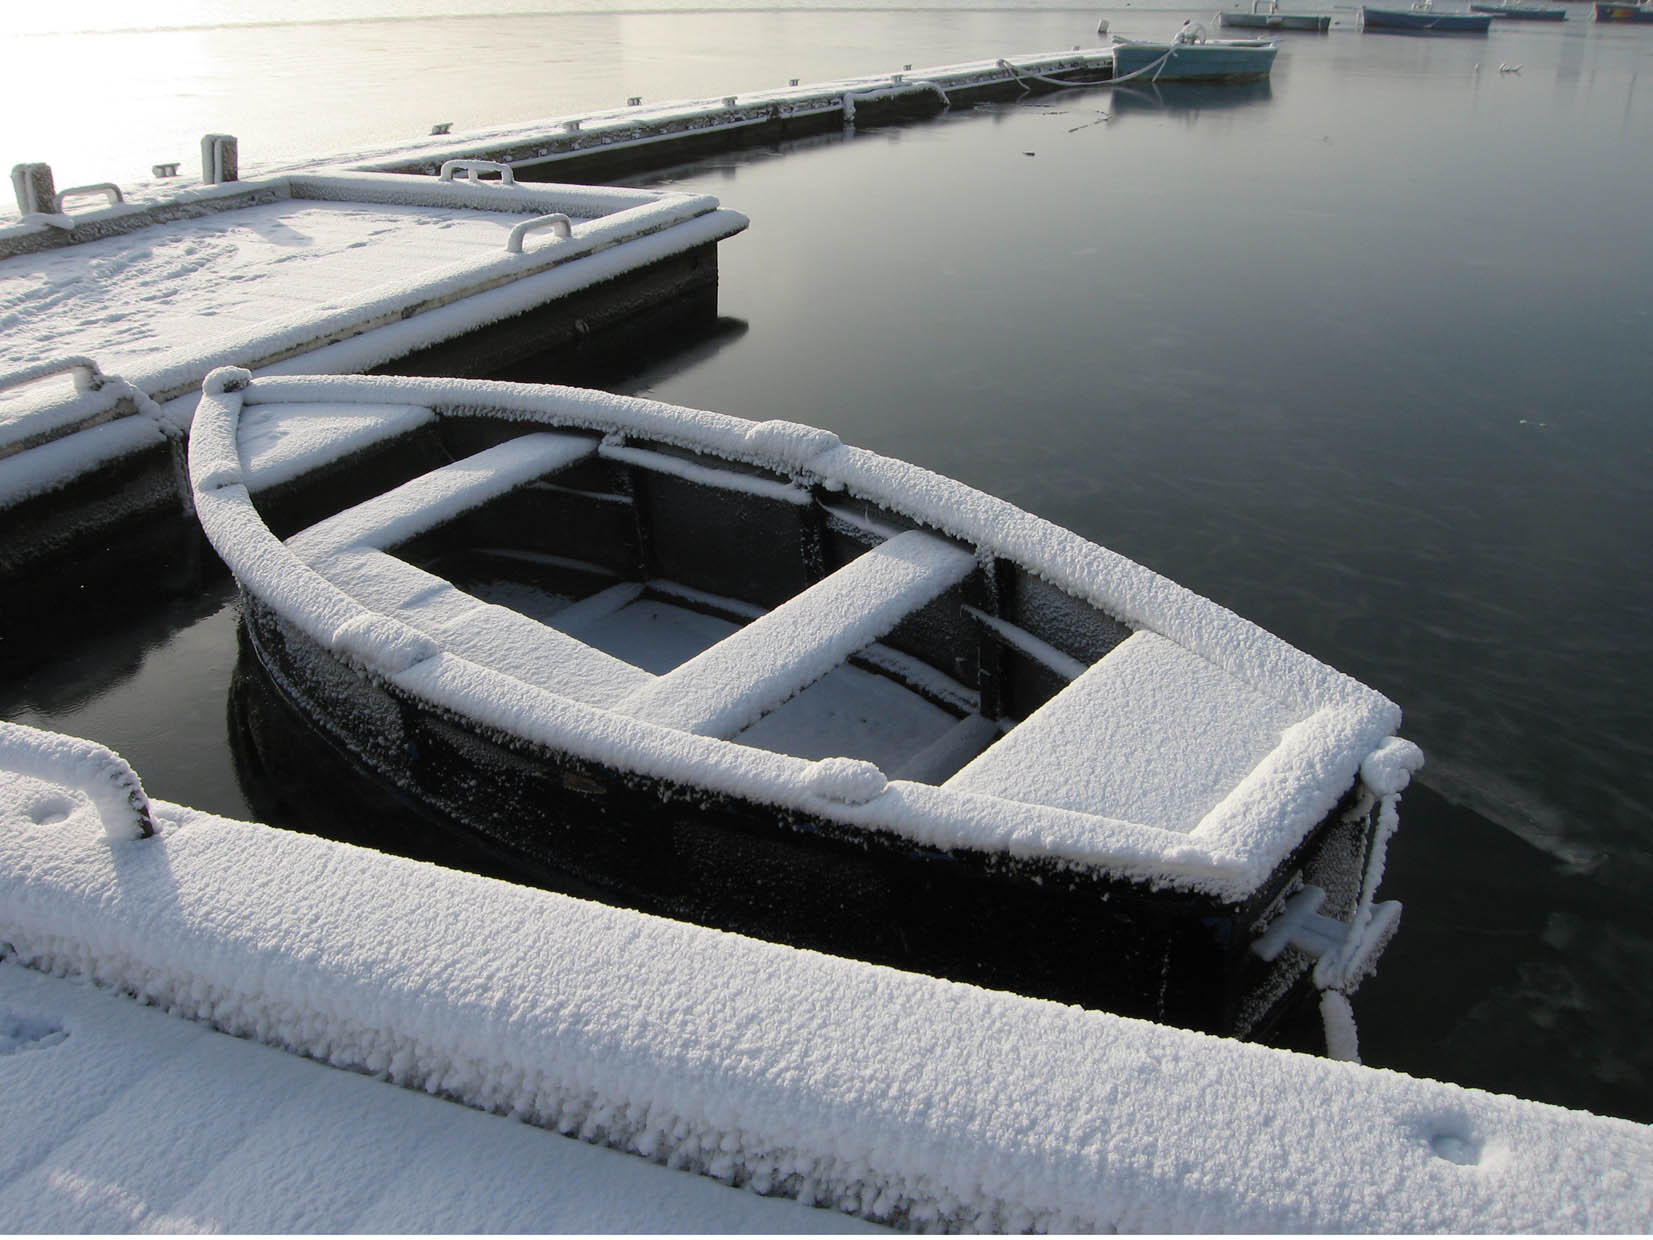 Photo boat in winter